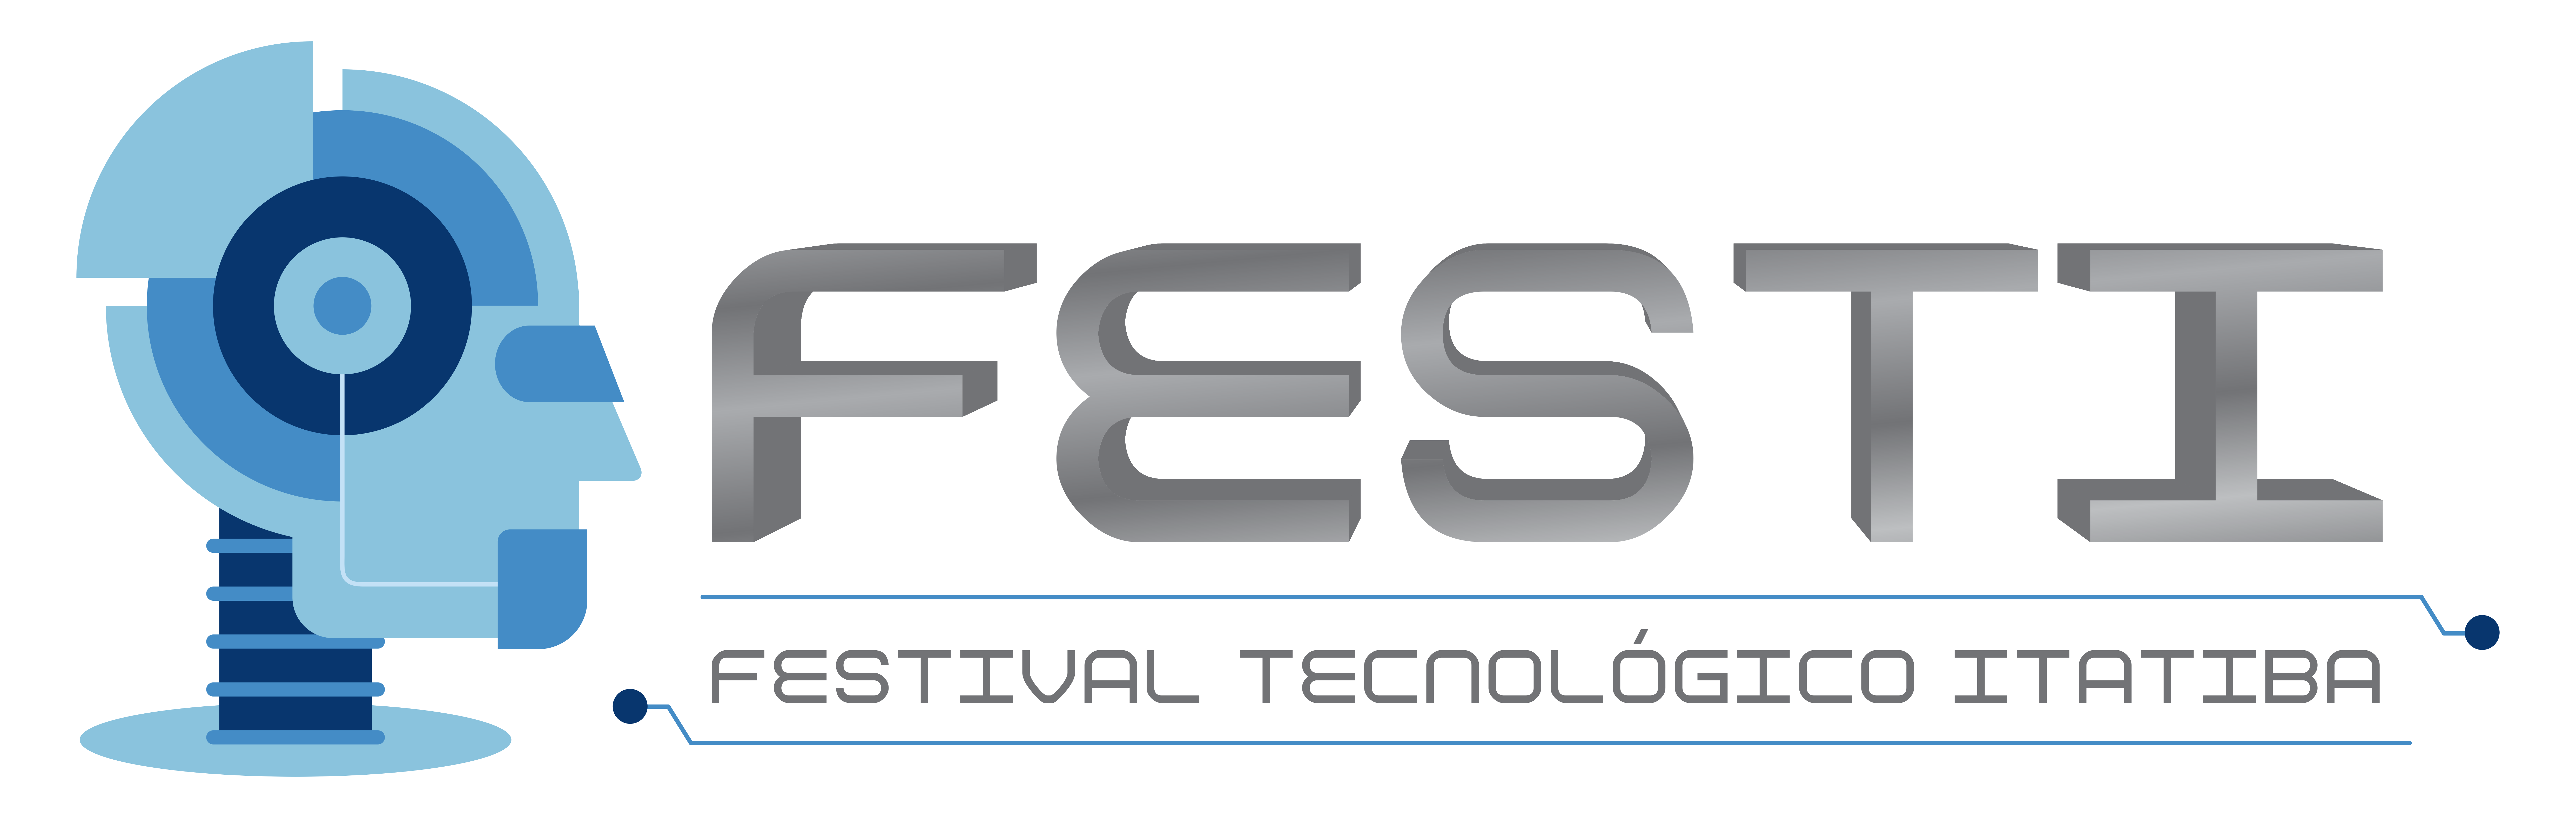 FESTI - Festival Tecnológico de Itatiba 